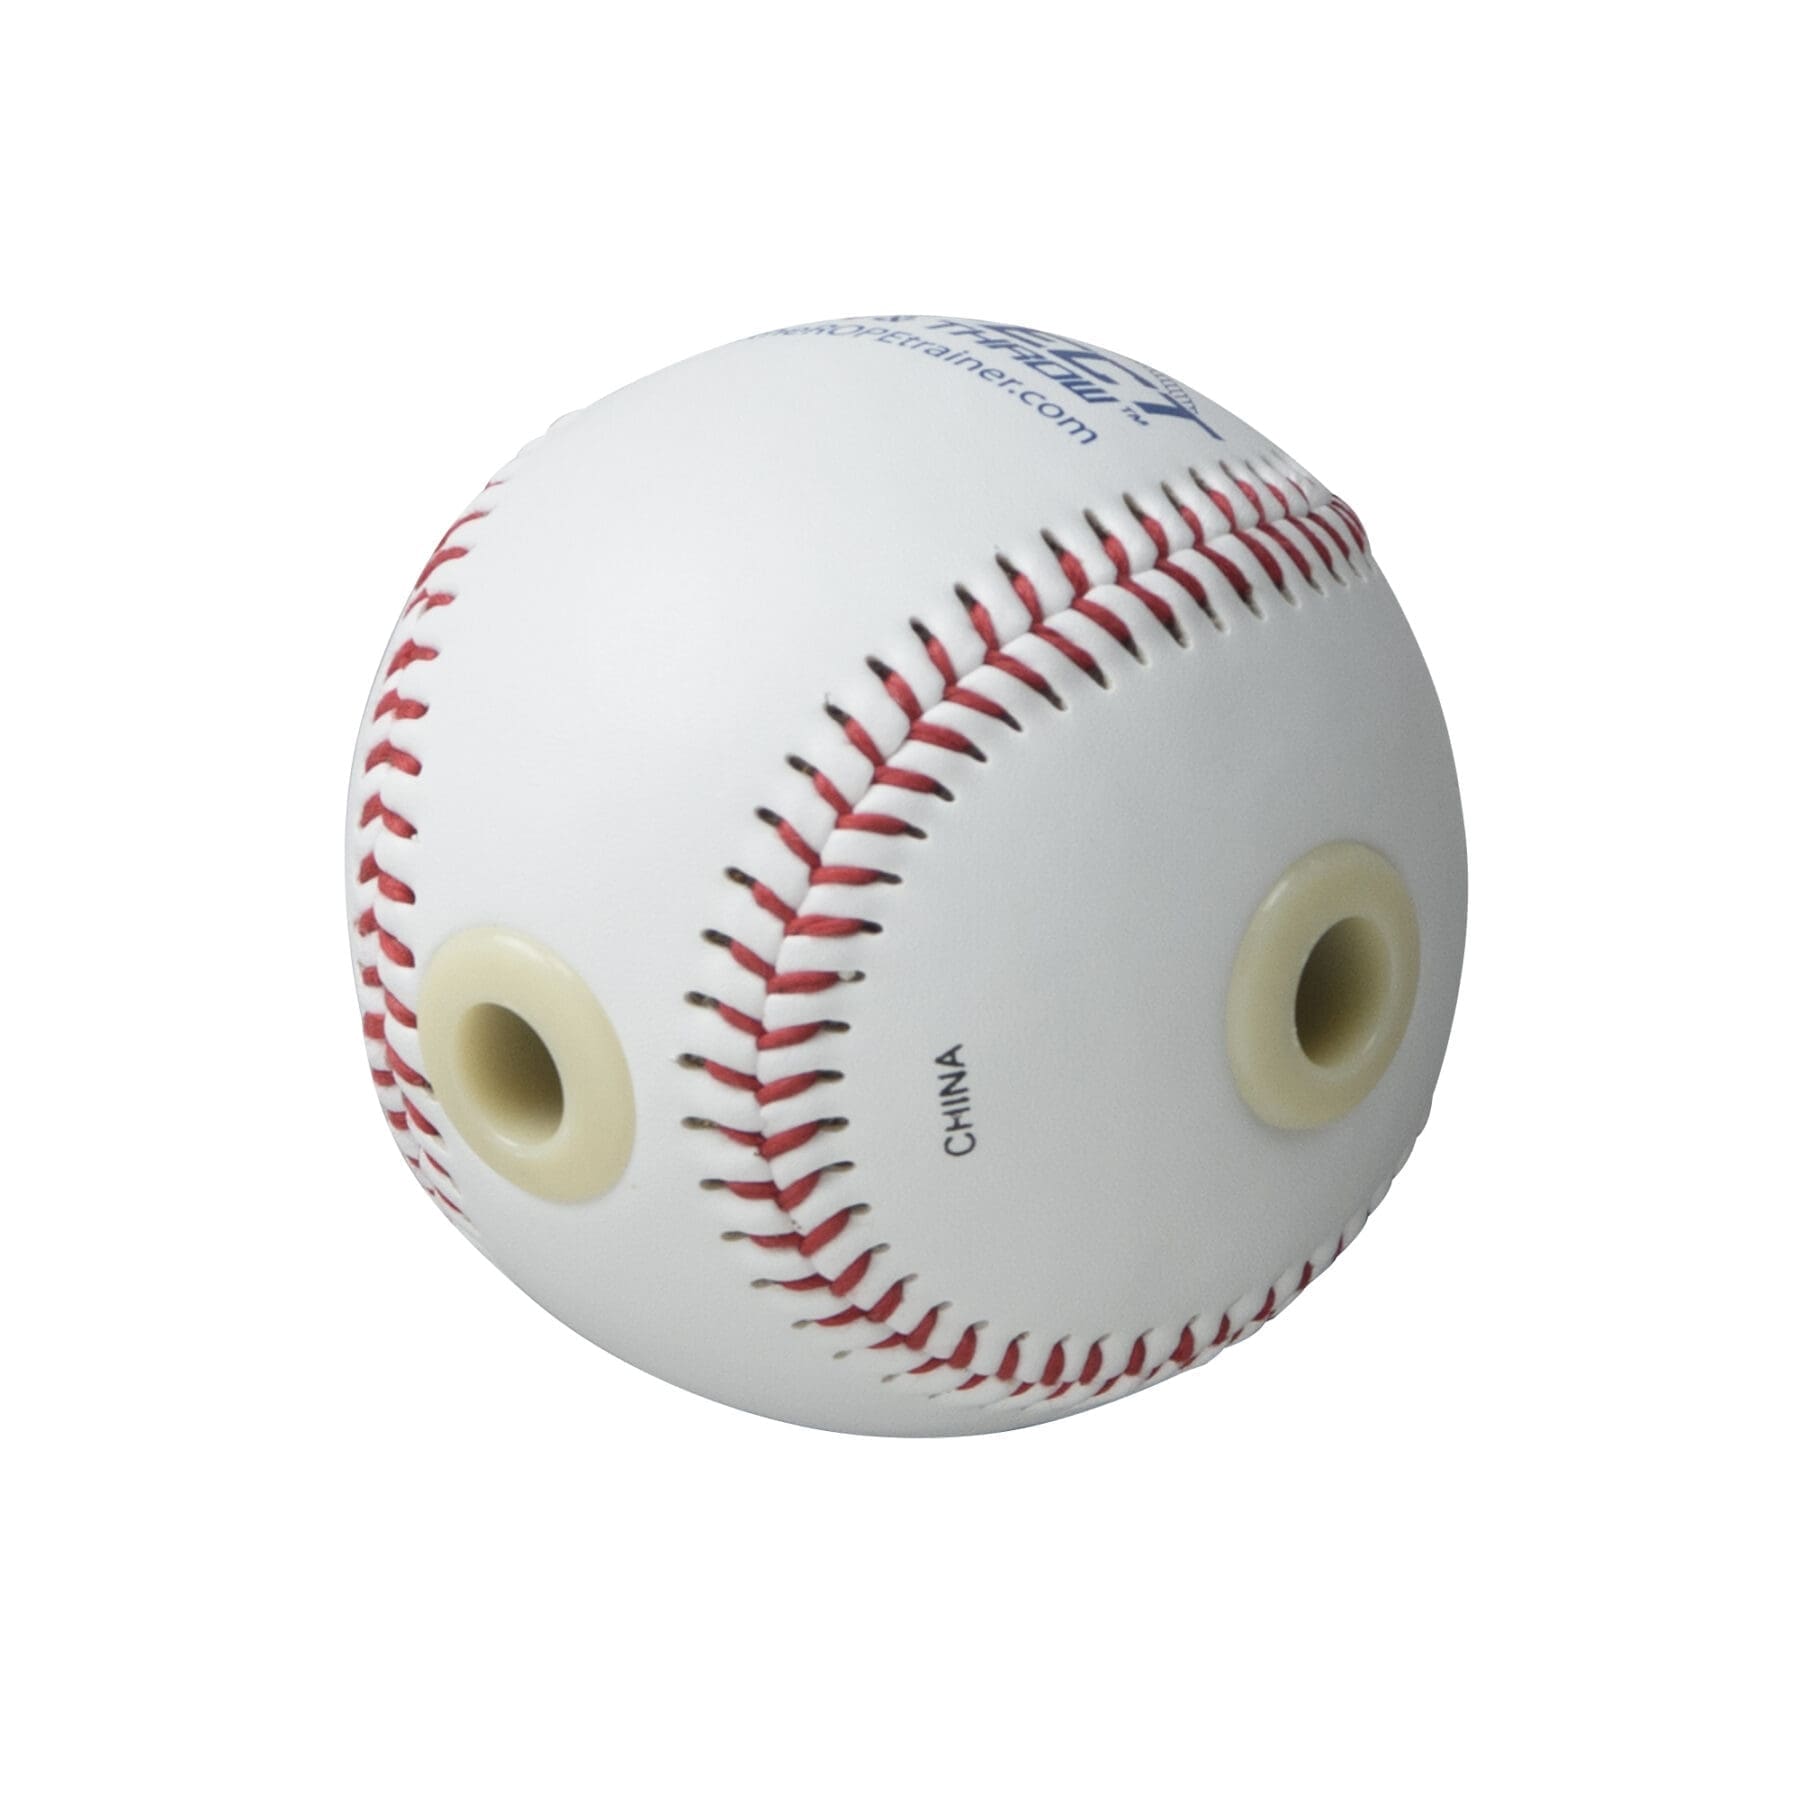 ロープトレーナー ROPE TRAINER – 野球トレーニング用品 – USA Baseball